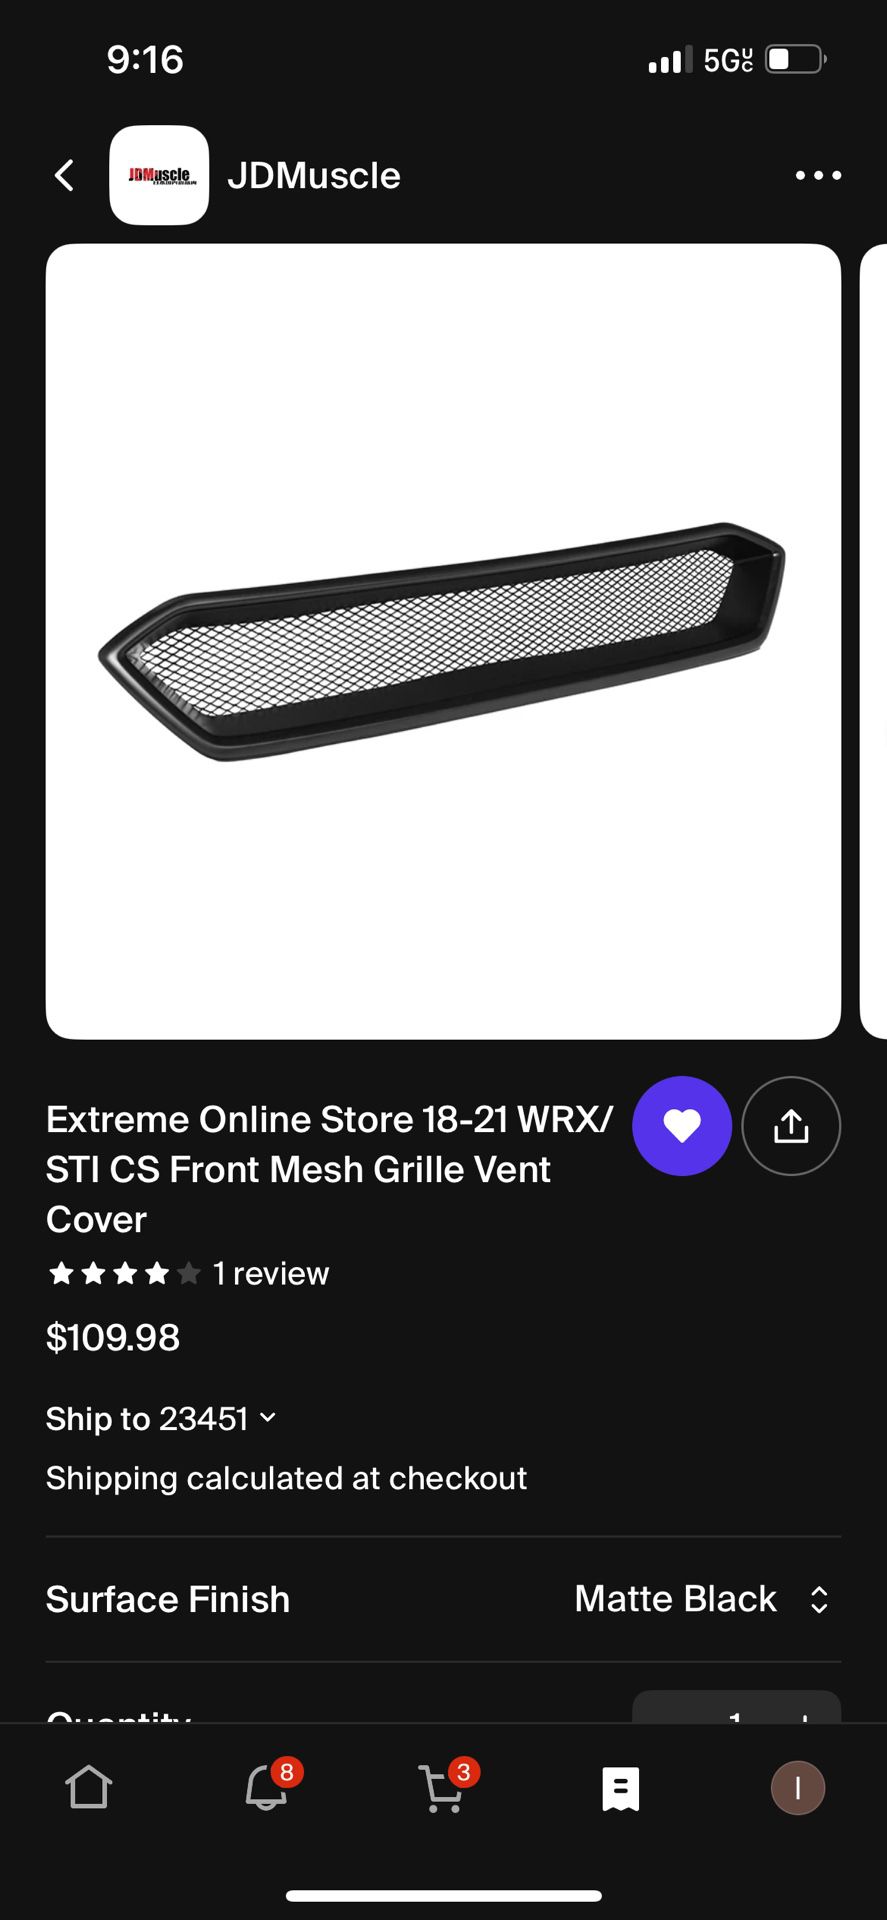 Extreme Online Store 18-21 WRX/STI CS Front Mesh MATTE BLACK Grille Vent